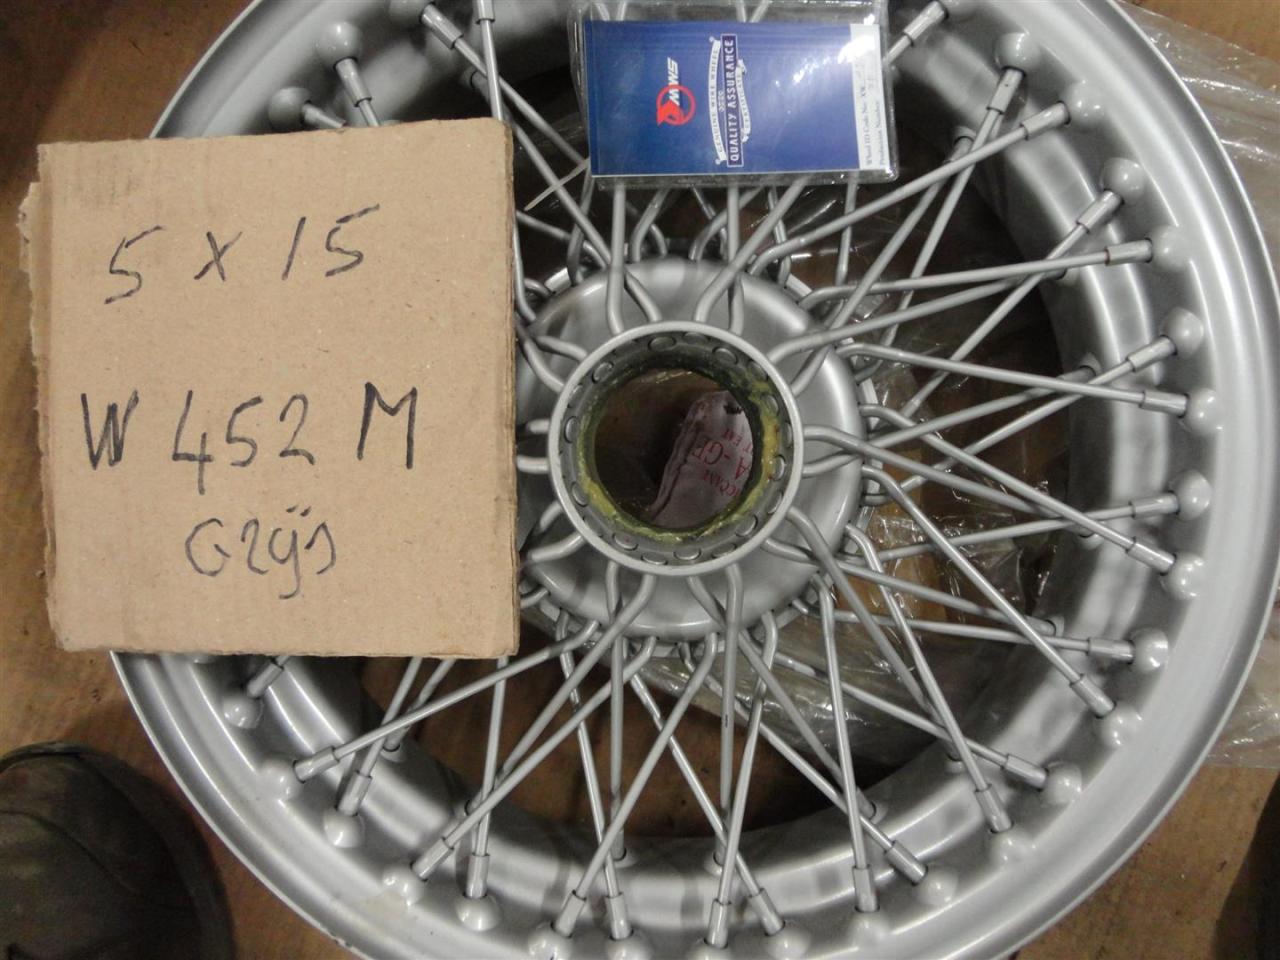 1900 Spaakwielen/ wire wheels 15 inch W452M